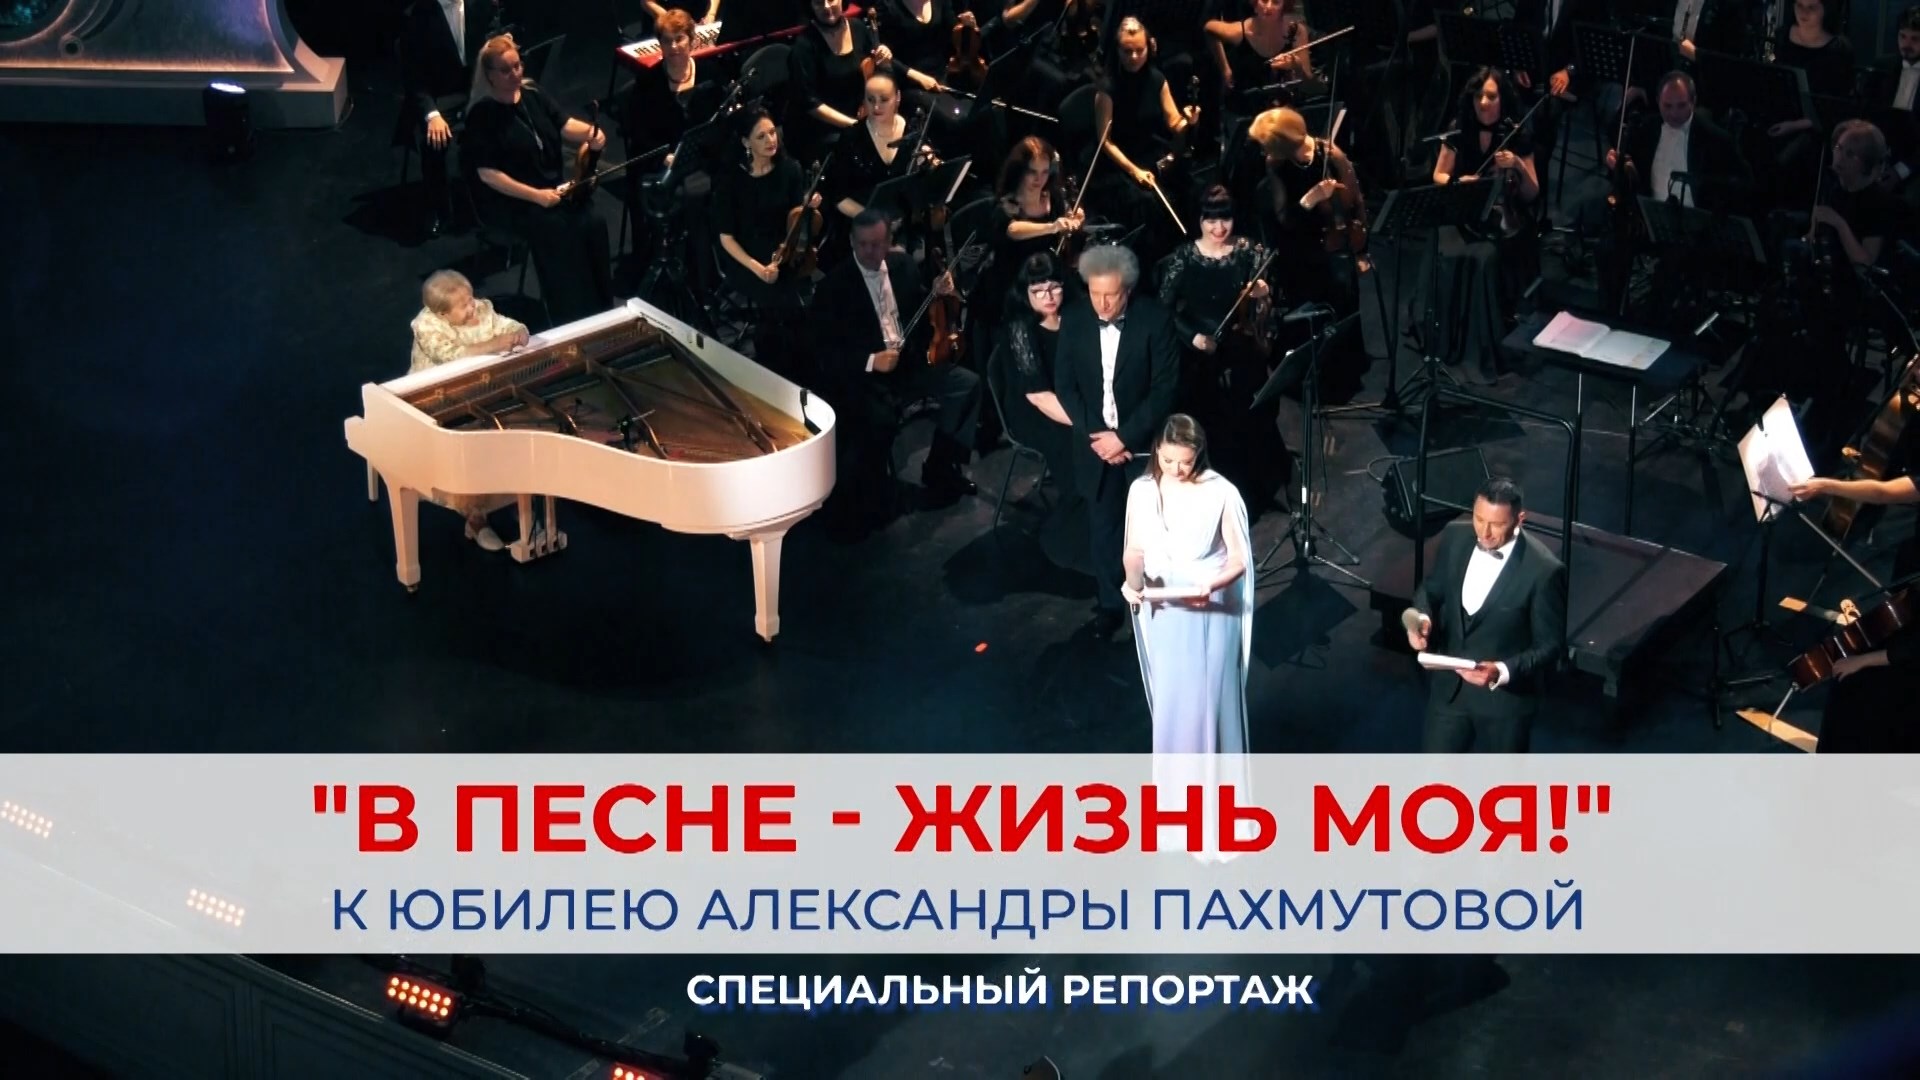 «В песне - жизнь моя!»: Александра Пахмутова в Волгограде